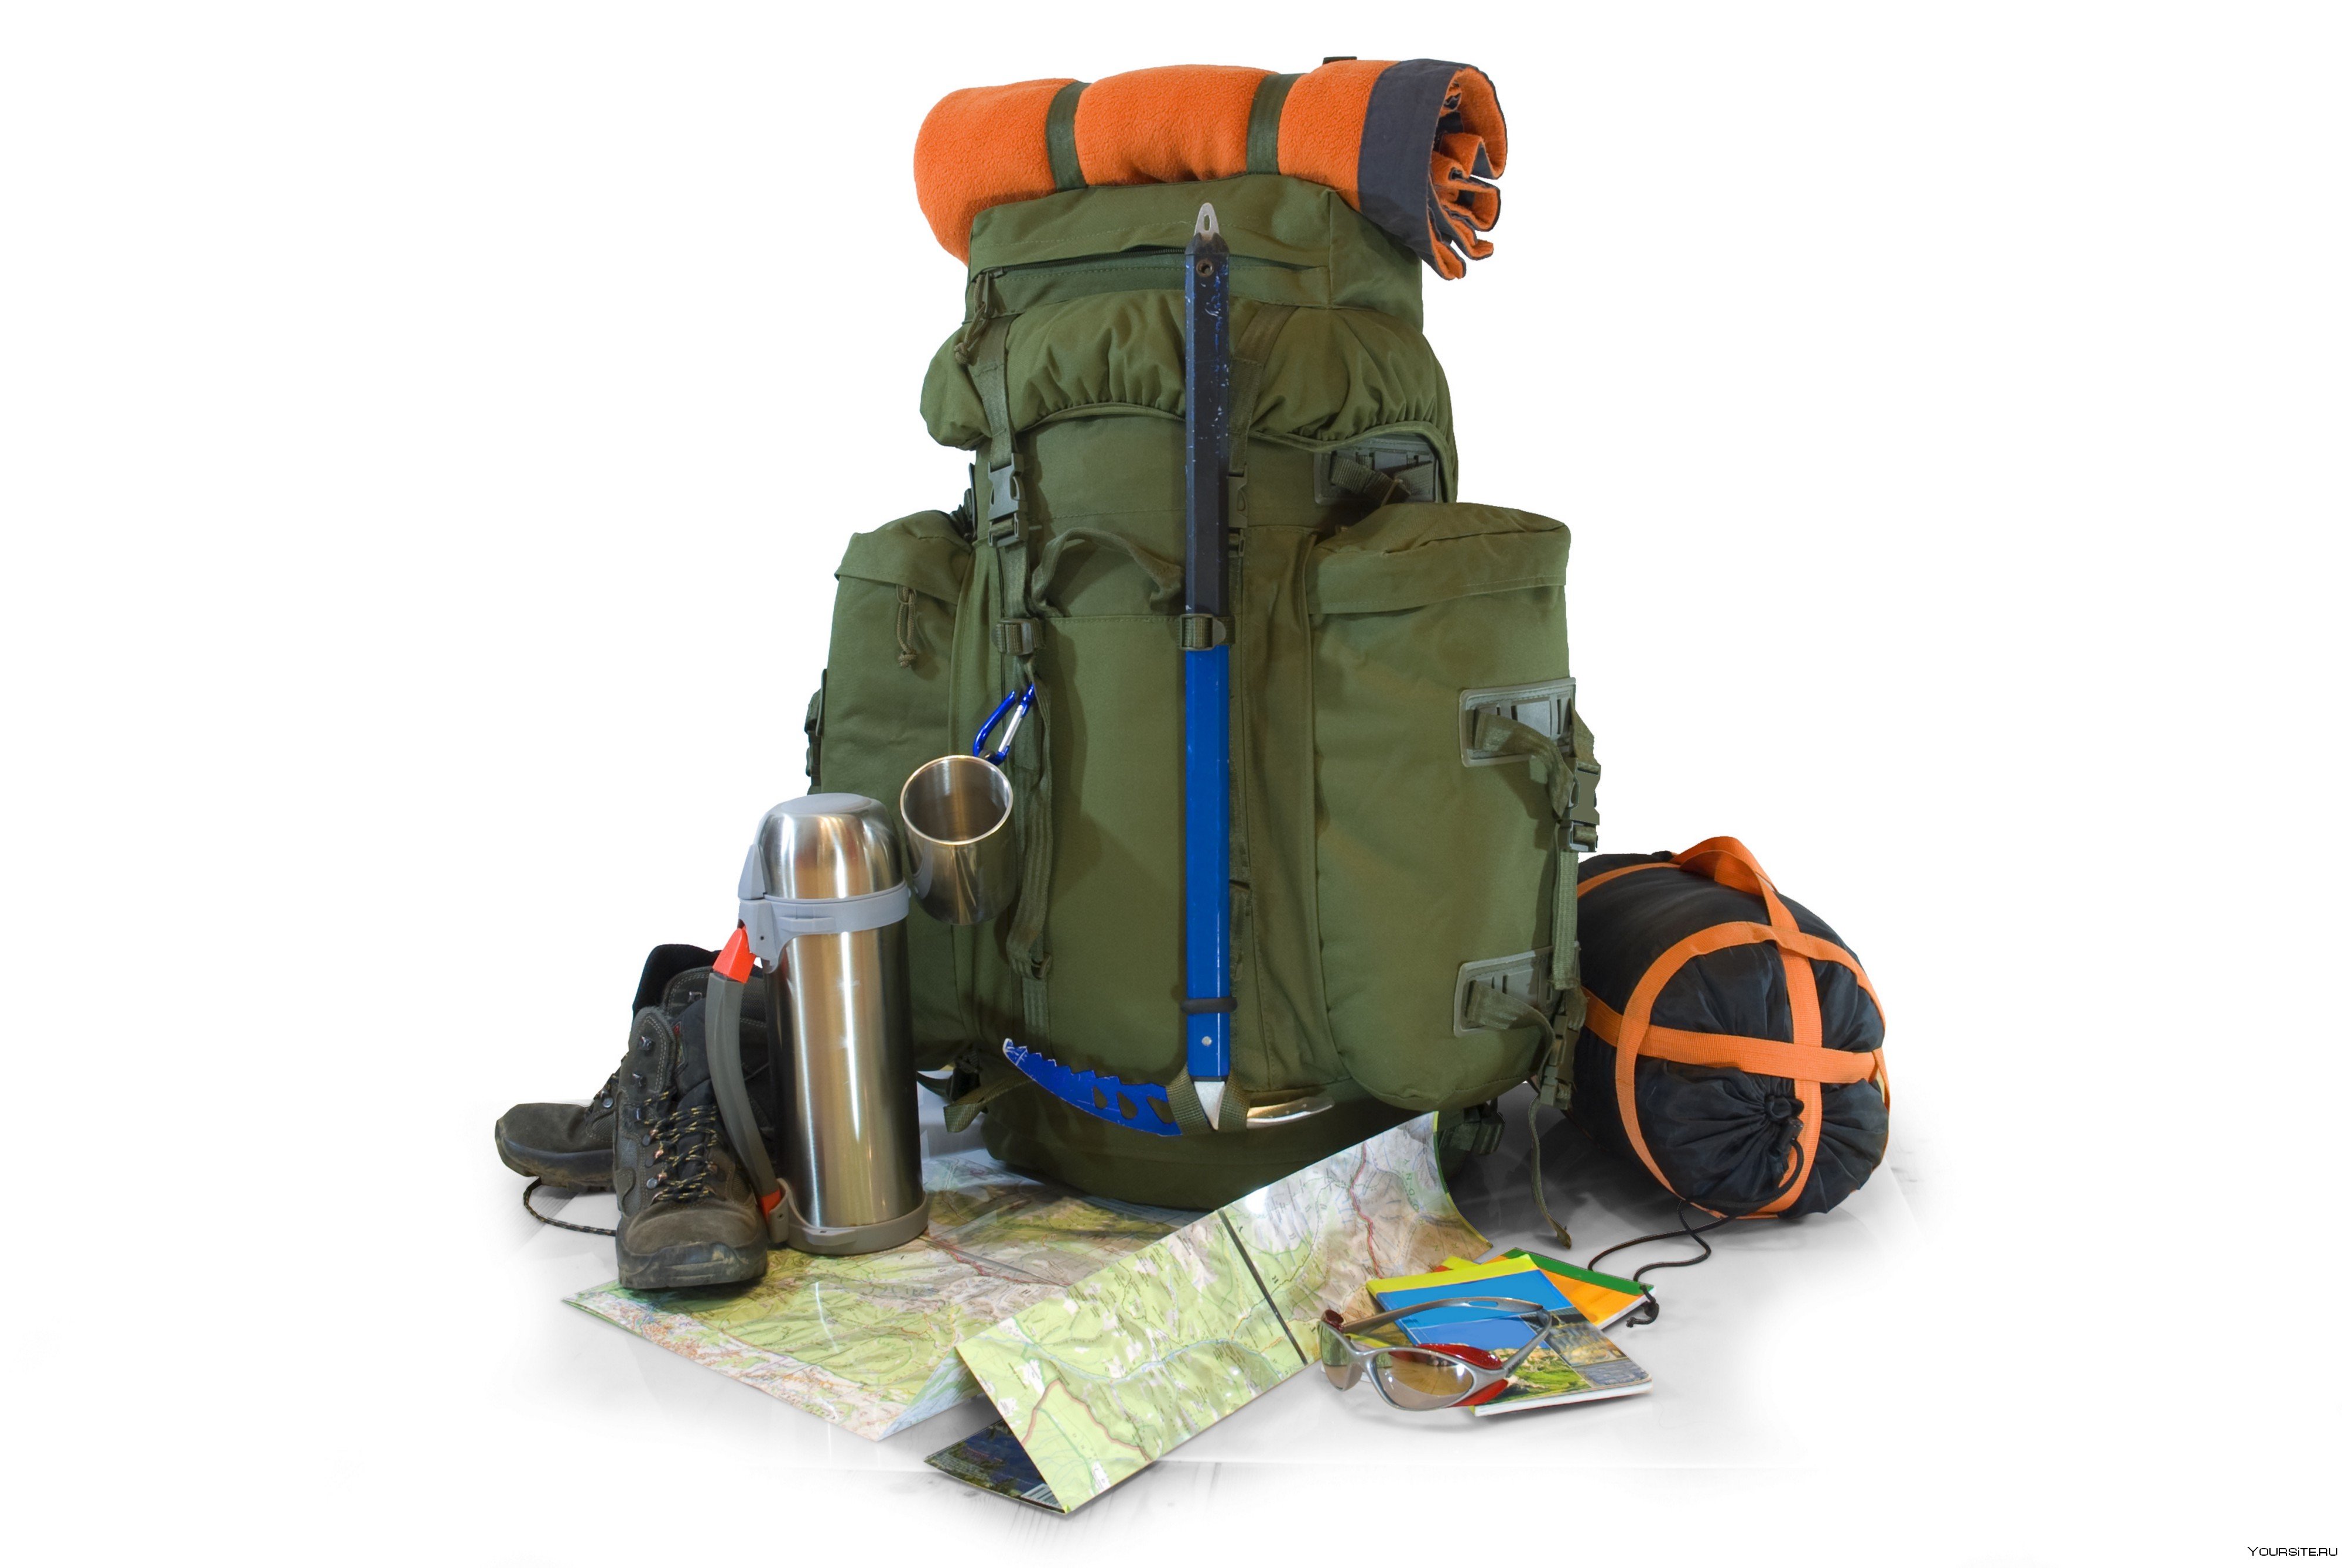 Для туристического похода ребята нужны рюкзаки. Снаряжение для туризма. Снаряжение для туристического похода. Турист с рюкзаком. Снаряжение туриста для похода.